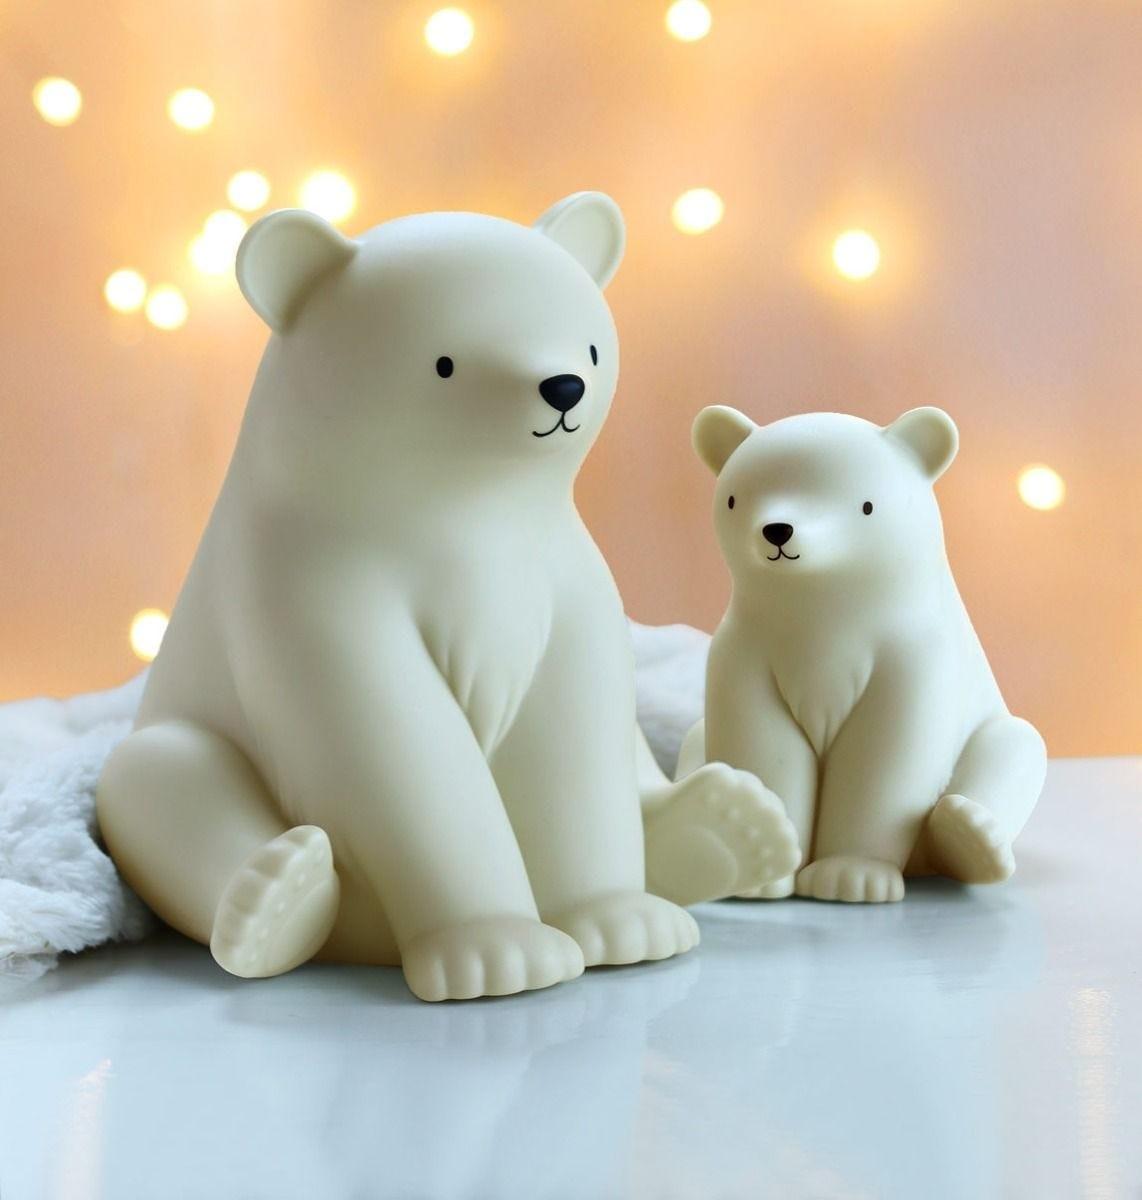 A Little Lovely Company - Night Light Polar Bear